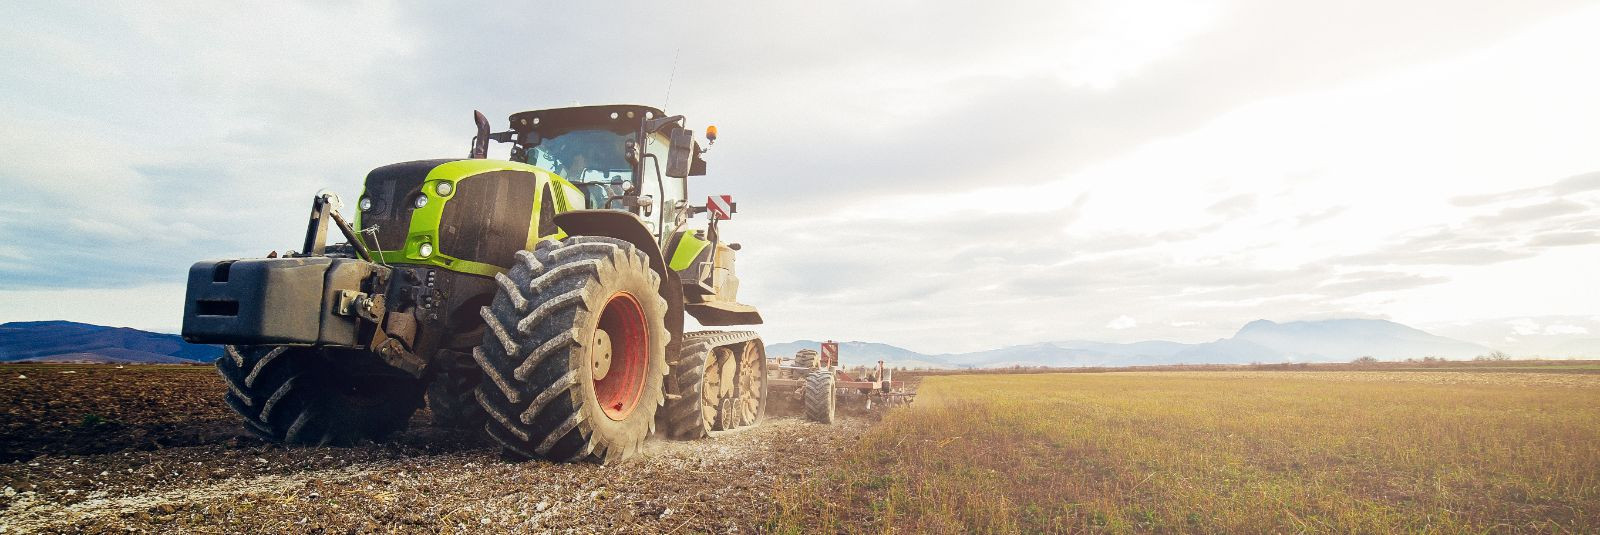 Traktorid on põllumajanduse ja maatööde oluline osa, võimaldades efektiivset maa harimist ja tootmist. Nende masinate korrasolek ja tõrgeteta toimimine on aga h